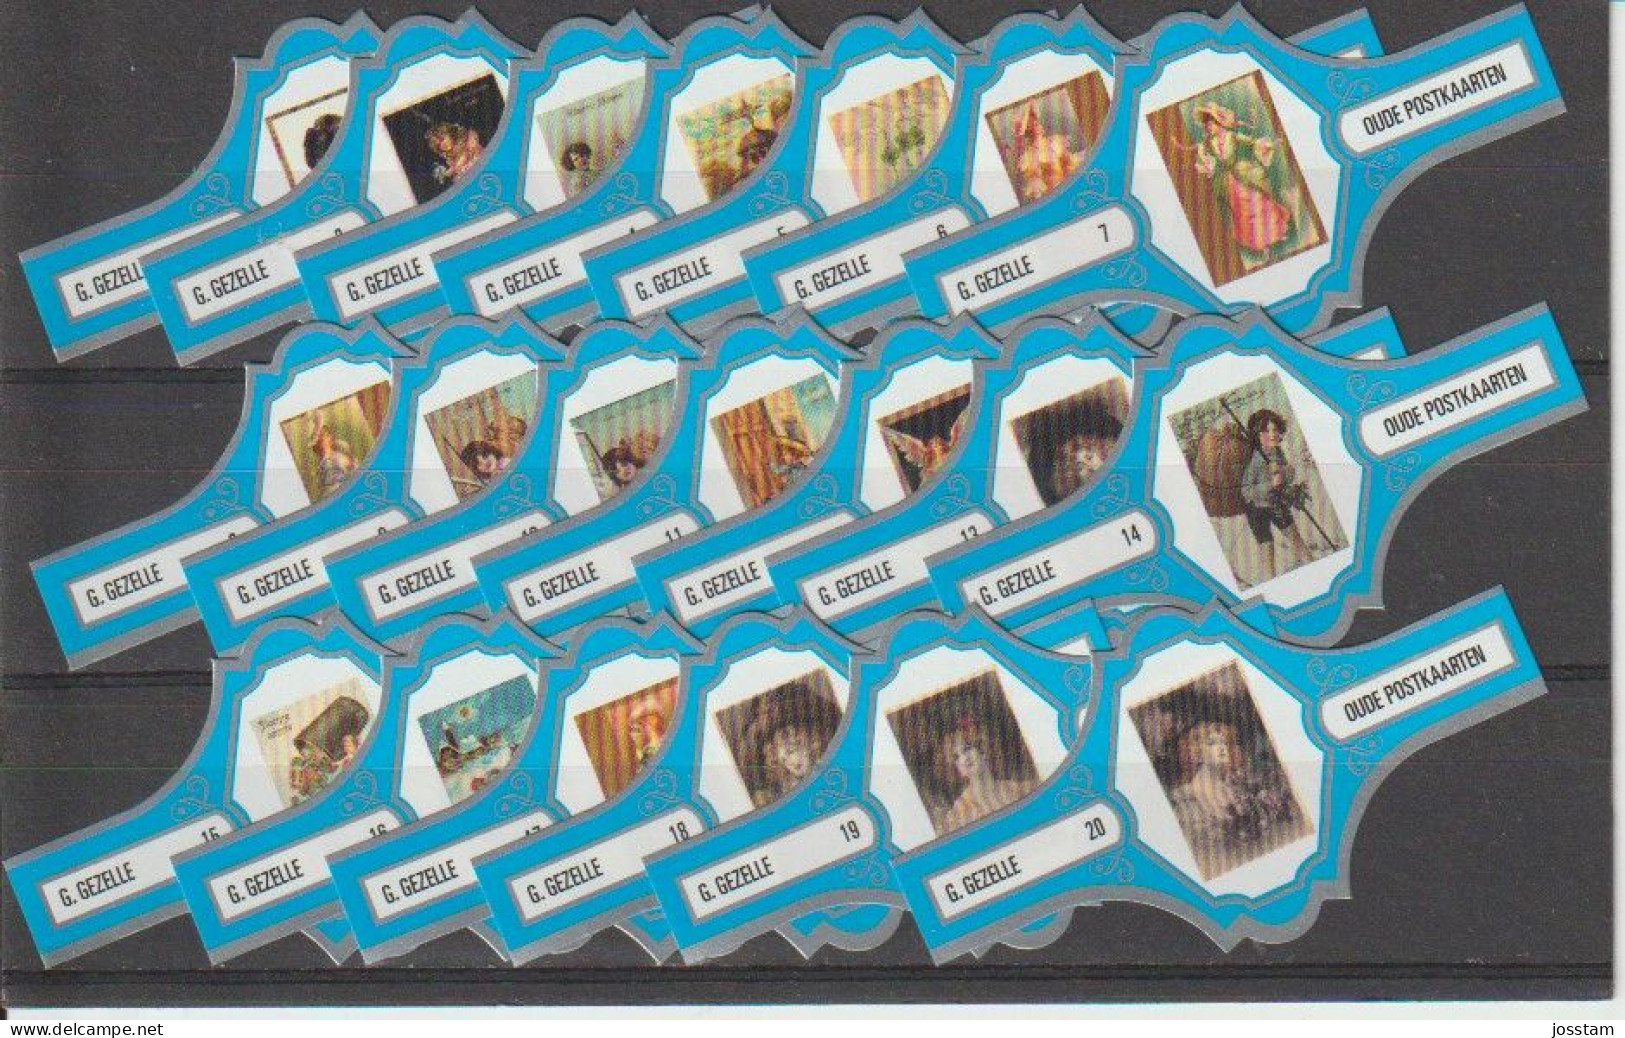 Reeks   2188  Postkaarten   1-20  ,20  Stuks Compleet   , Sigarenbanden Vitolas , Etiquette - Bauchbinden (Zigarrenringe)